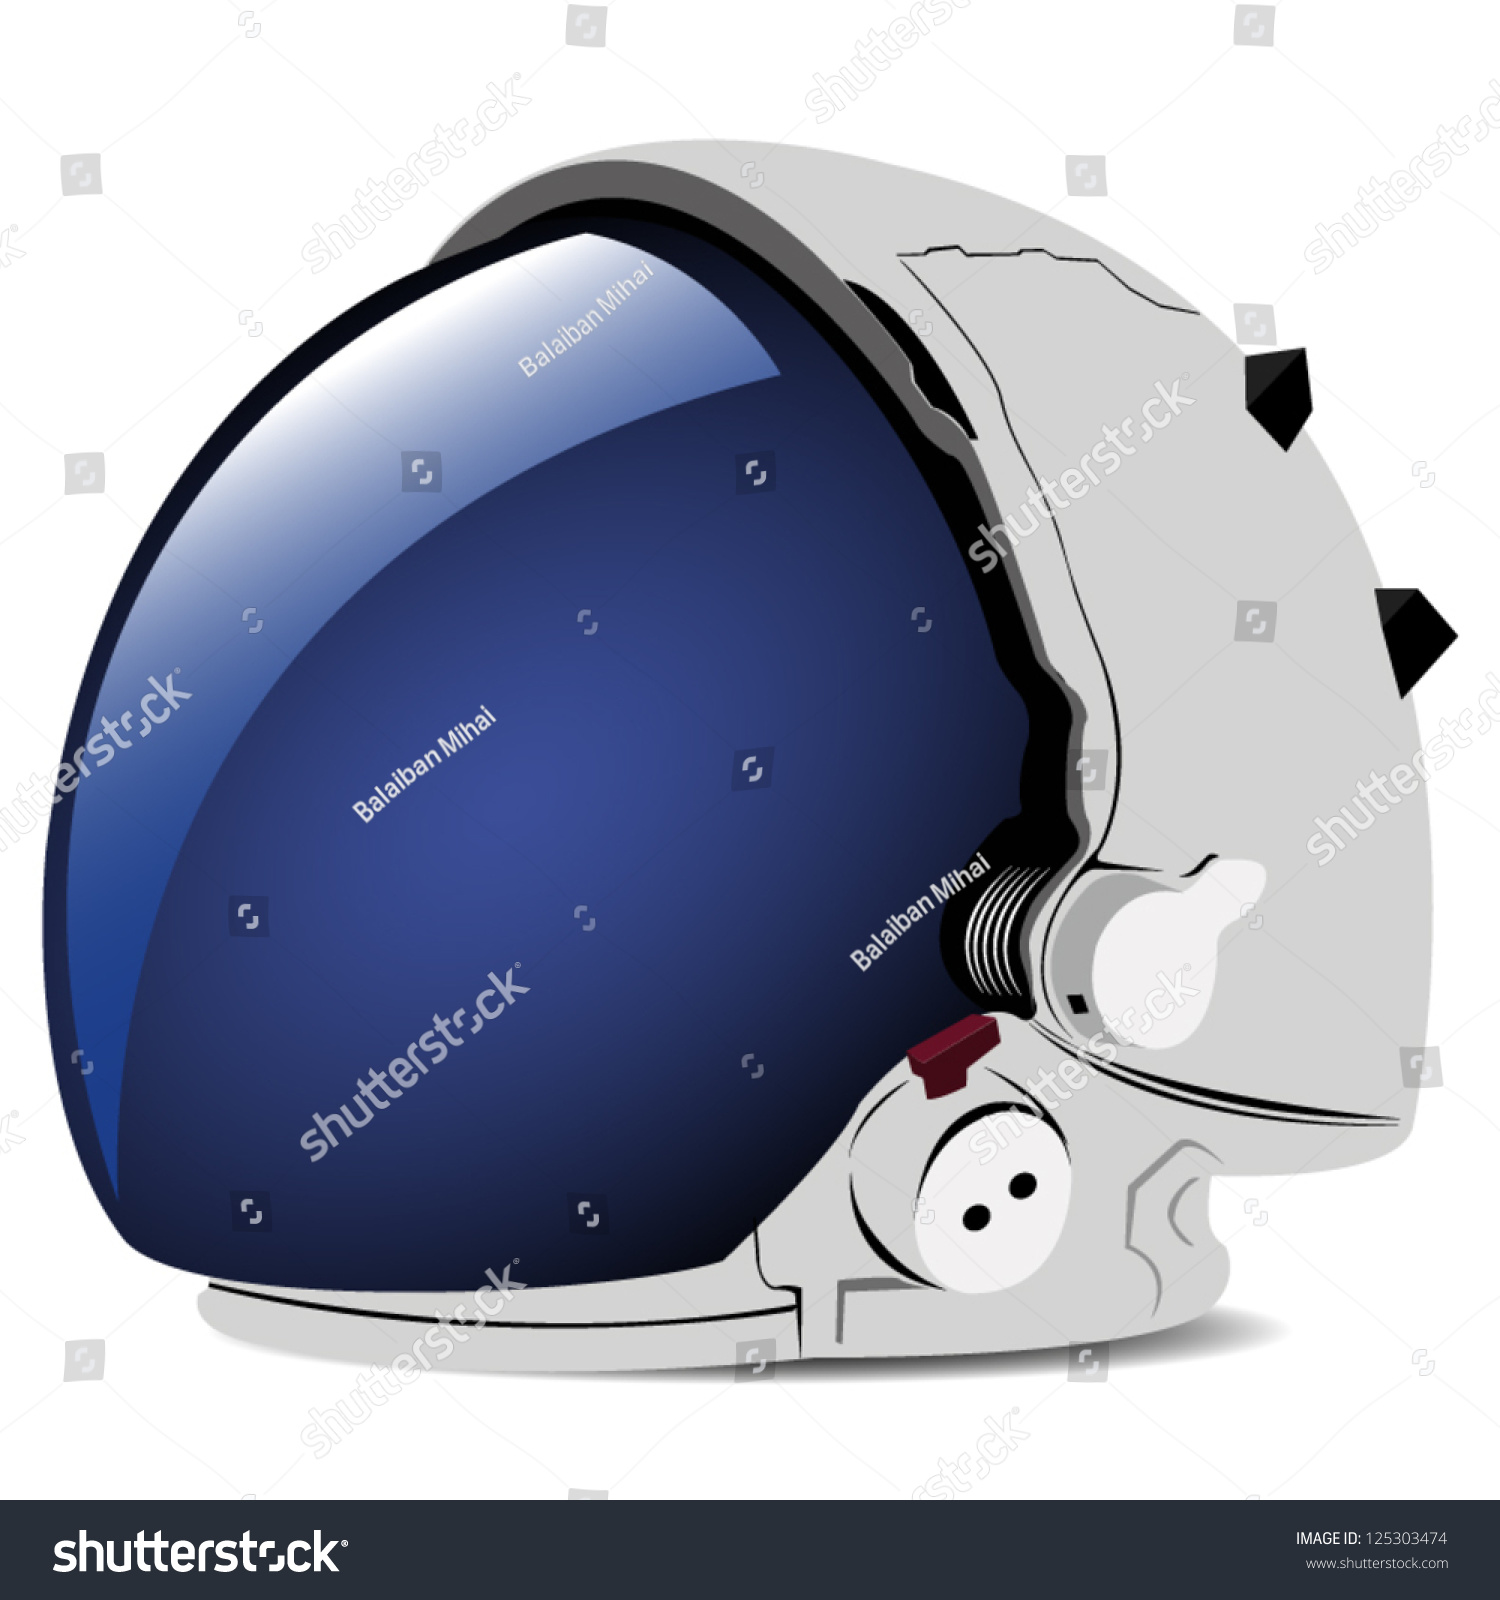 Space Helmet Stock Vector 125303474 - Shutterstock